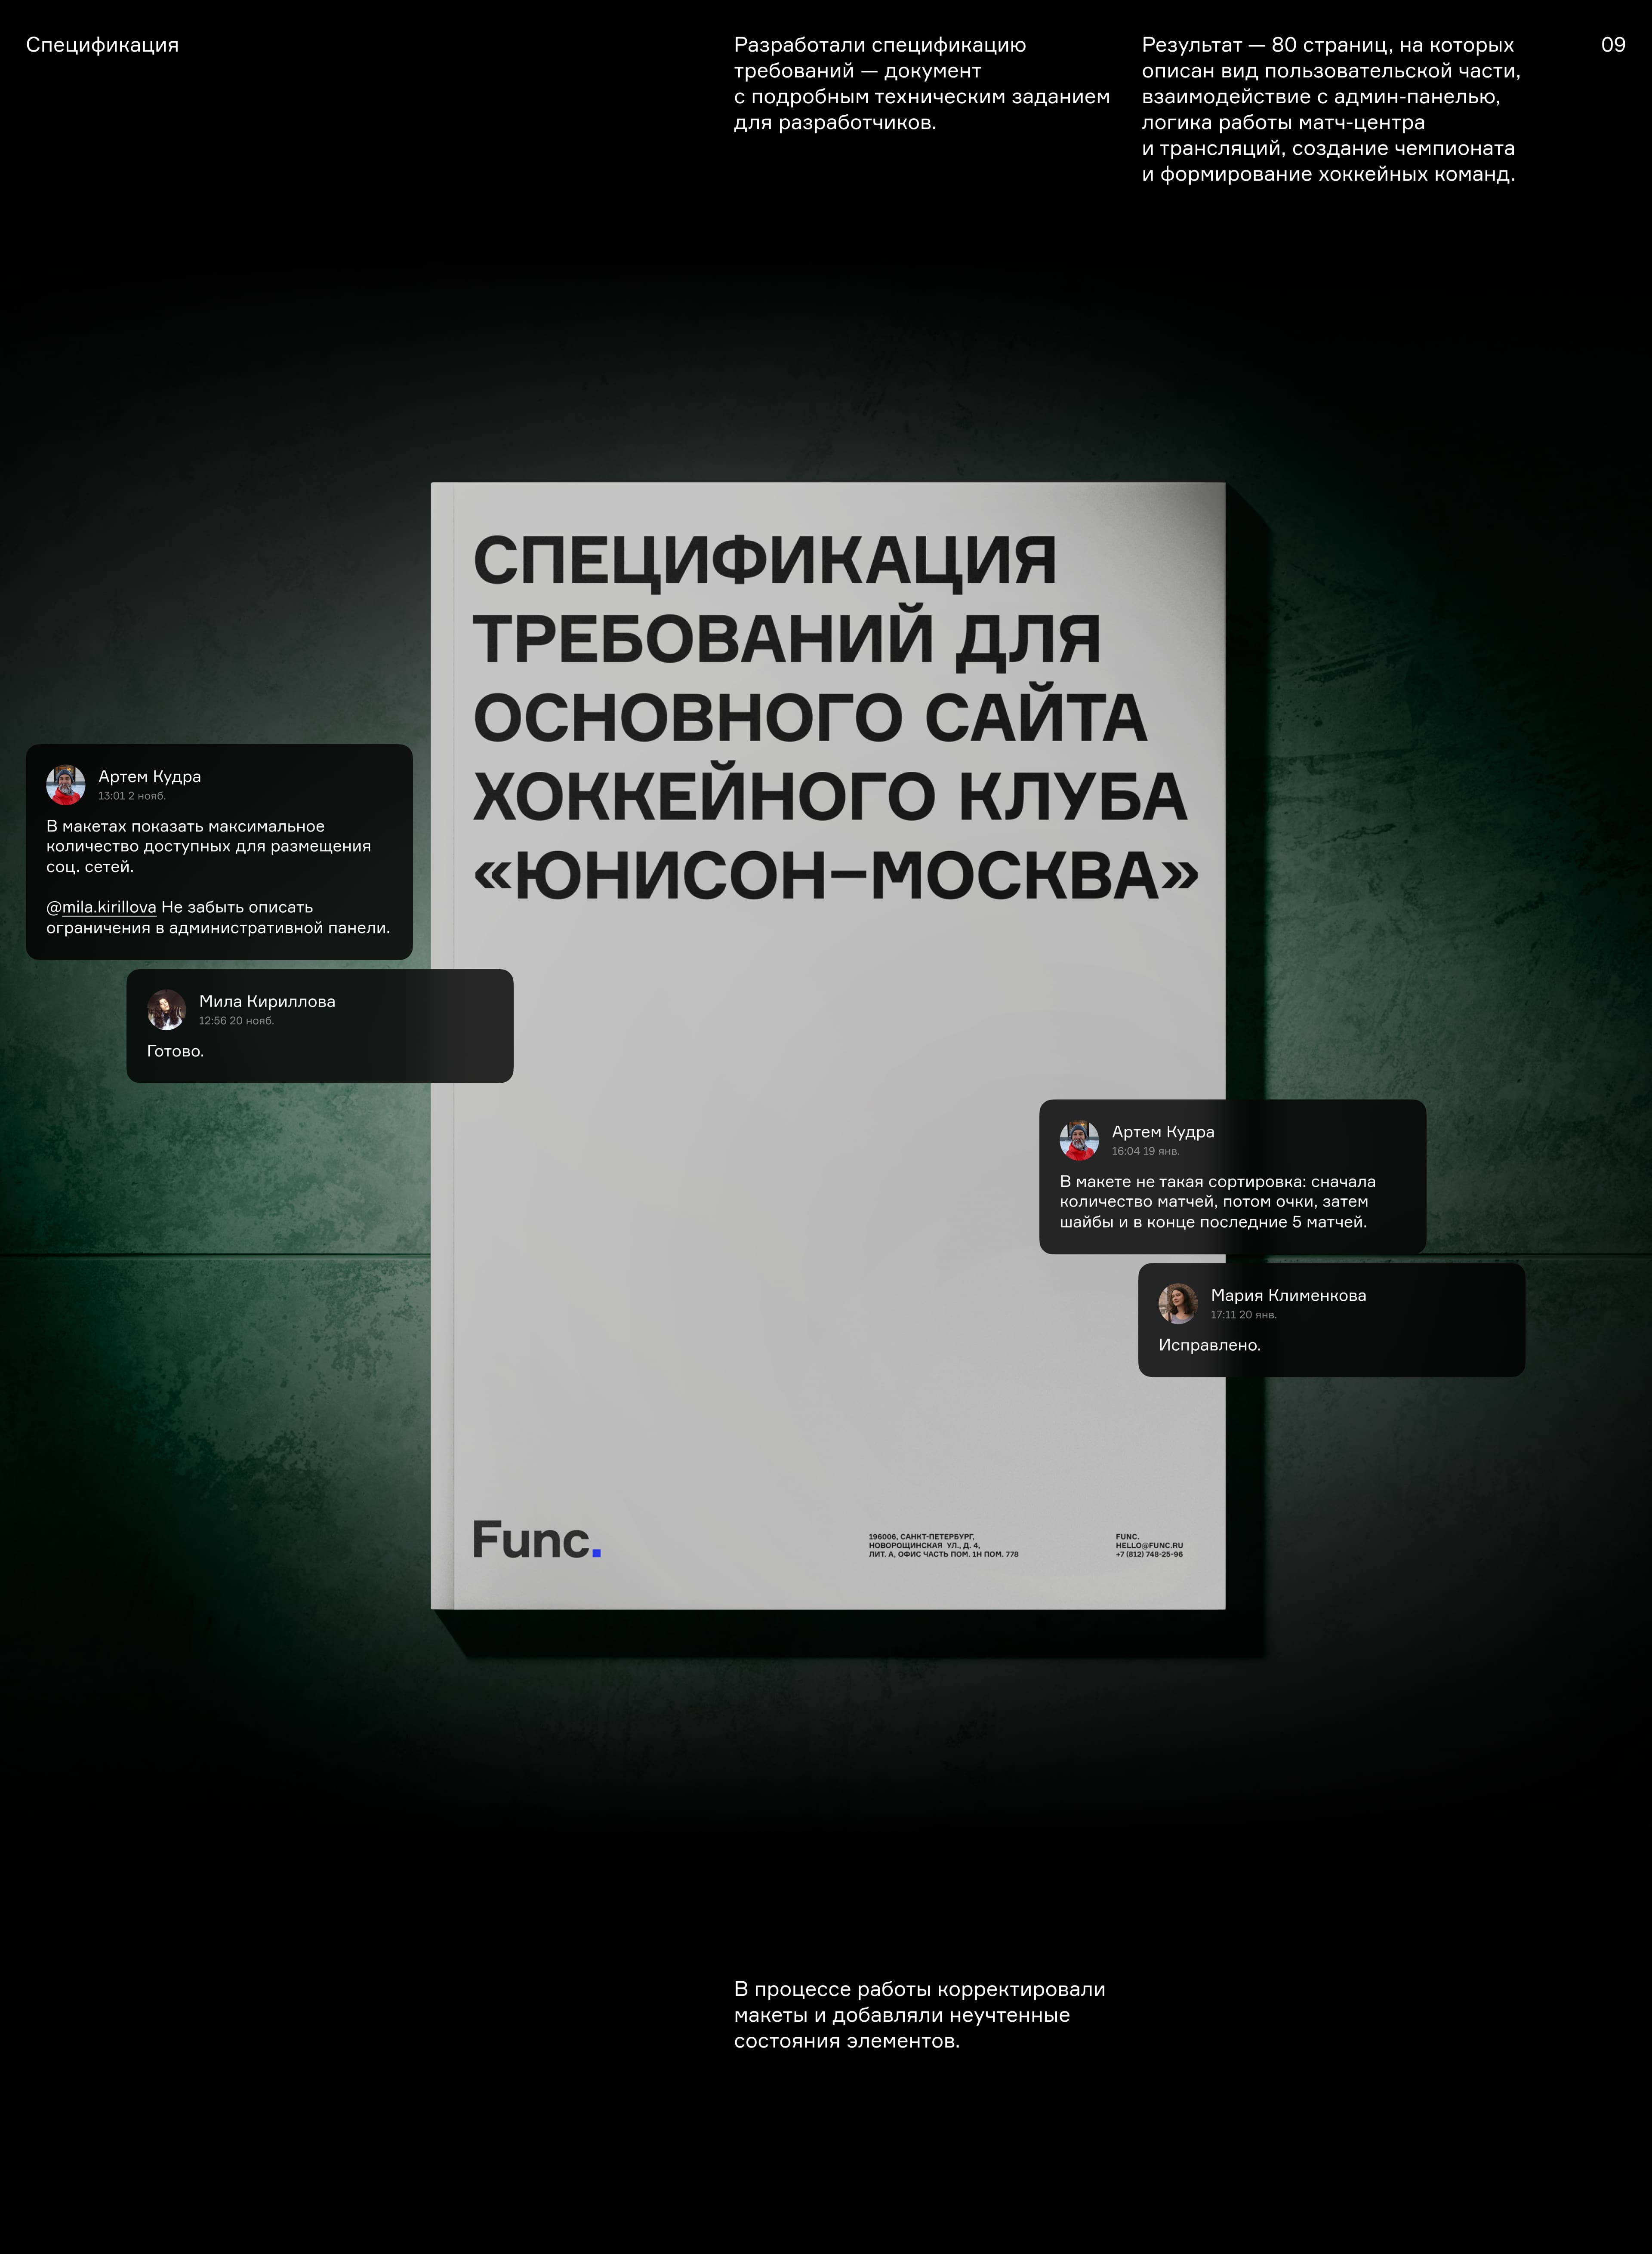 Дизайн основного сайта ХК «Юнисон-Москва» — Изображение №19 — Интерфейсы на Dprofile